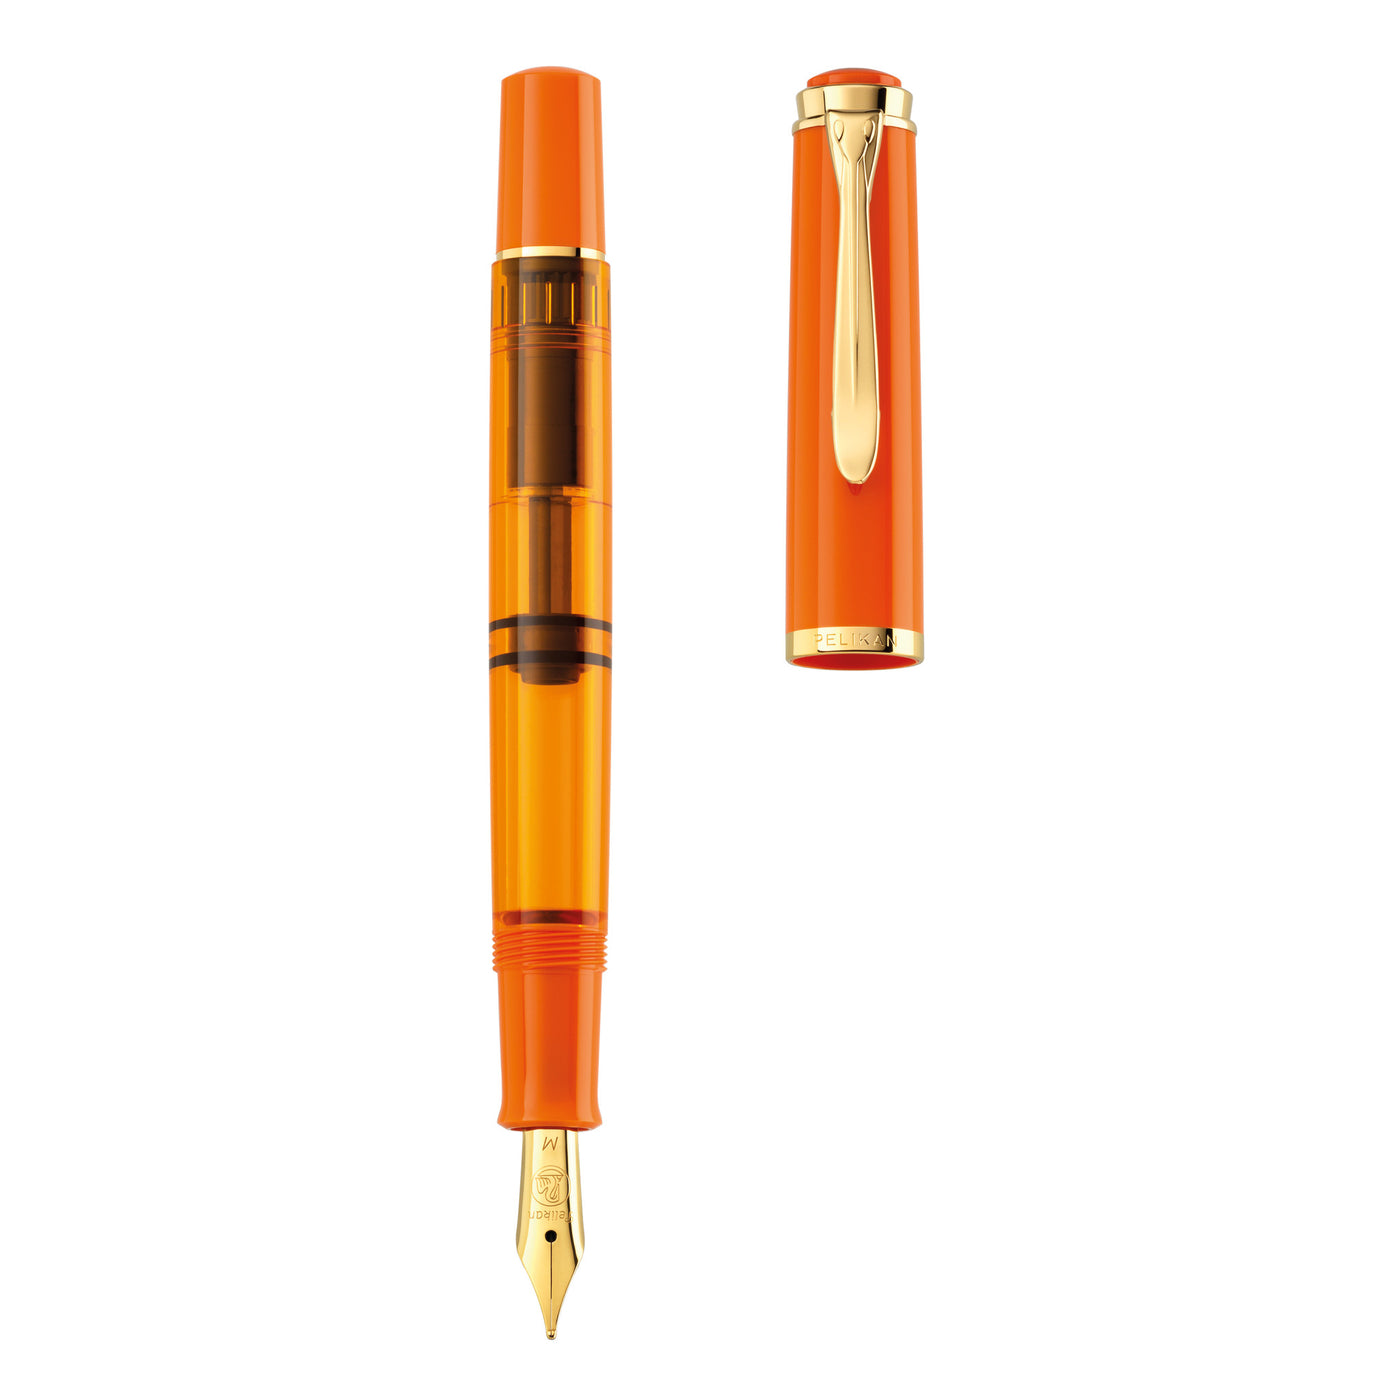 Pelikan Classic M200 Fountain Pen - Orange Delight (Special Edition)